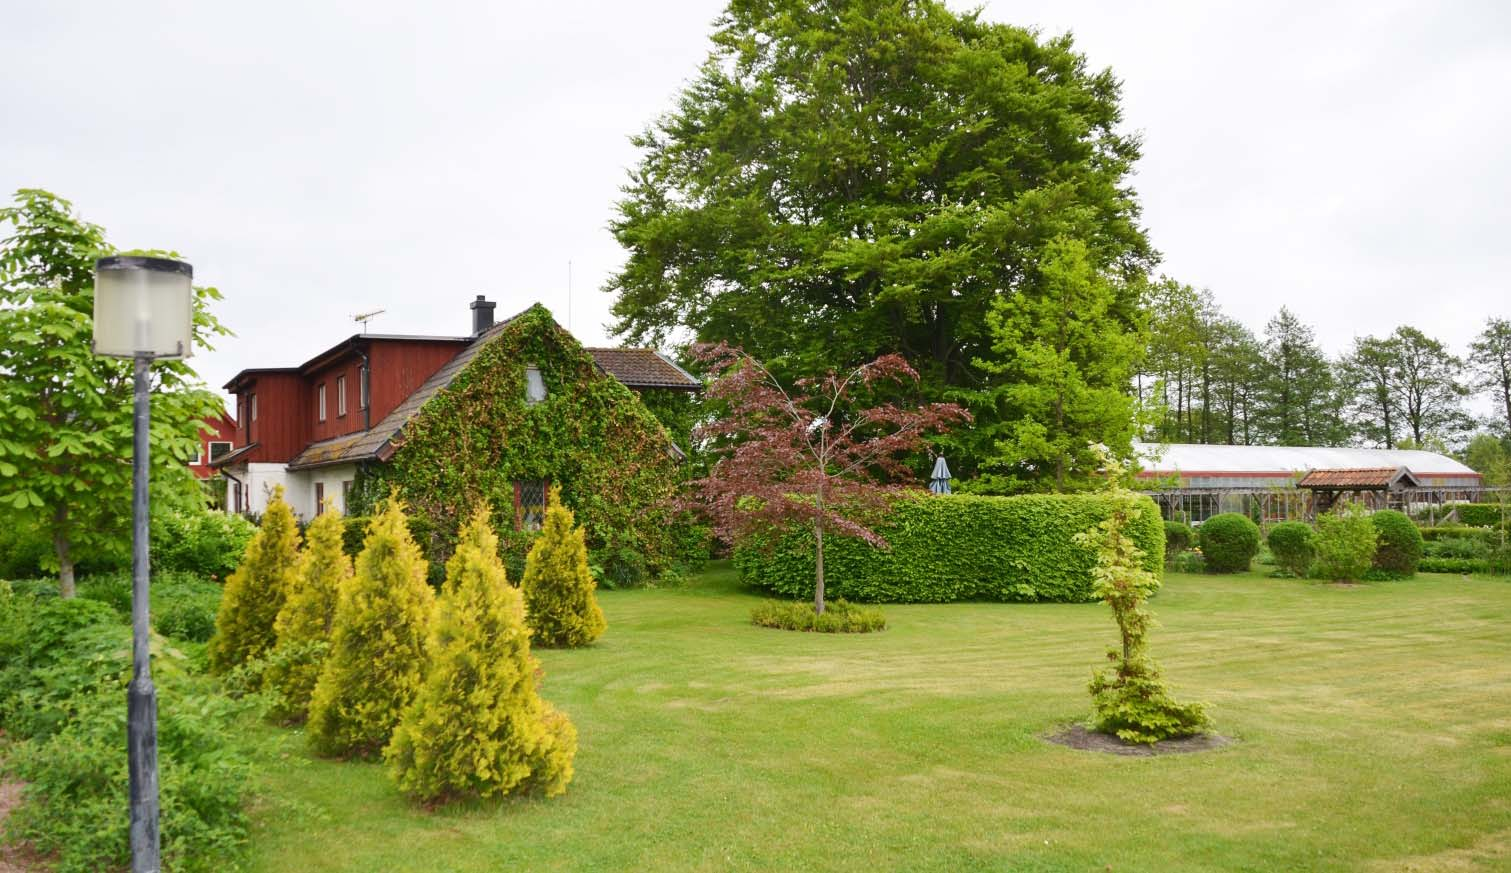 Sammanfattning Klinta Kryddor & Grönt med Café är en familjedriven trädgårdsoas där nuvarande ägare under ca trettio år arbetet fram en välkänd och fungerande verksamhet.